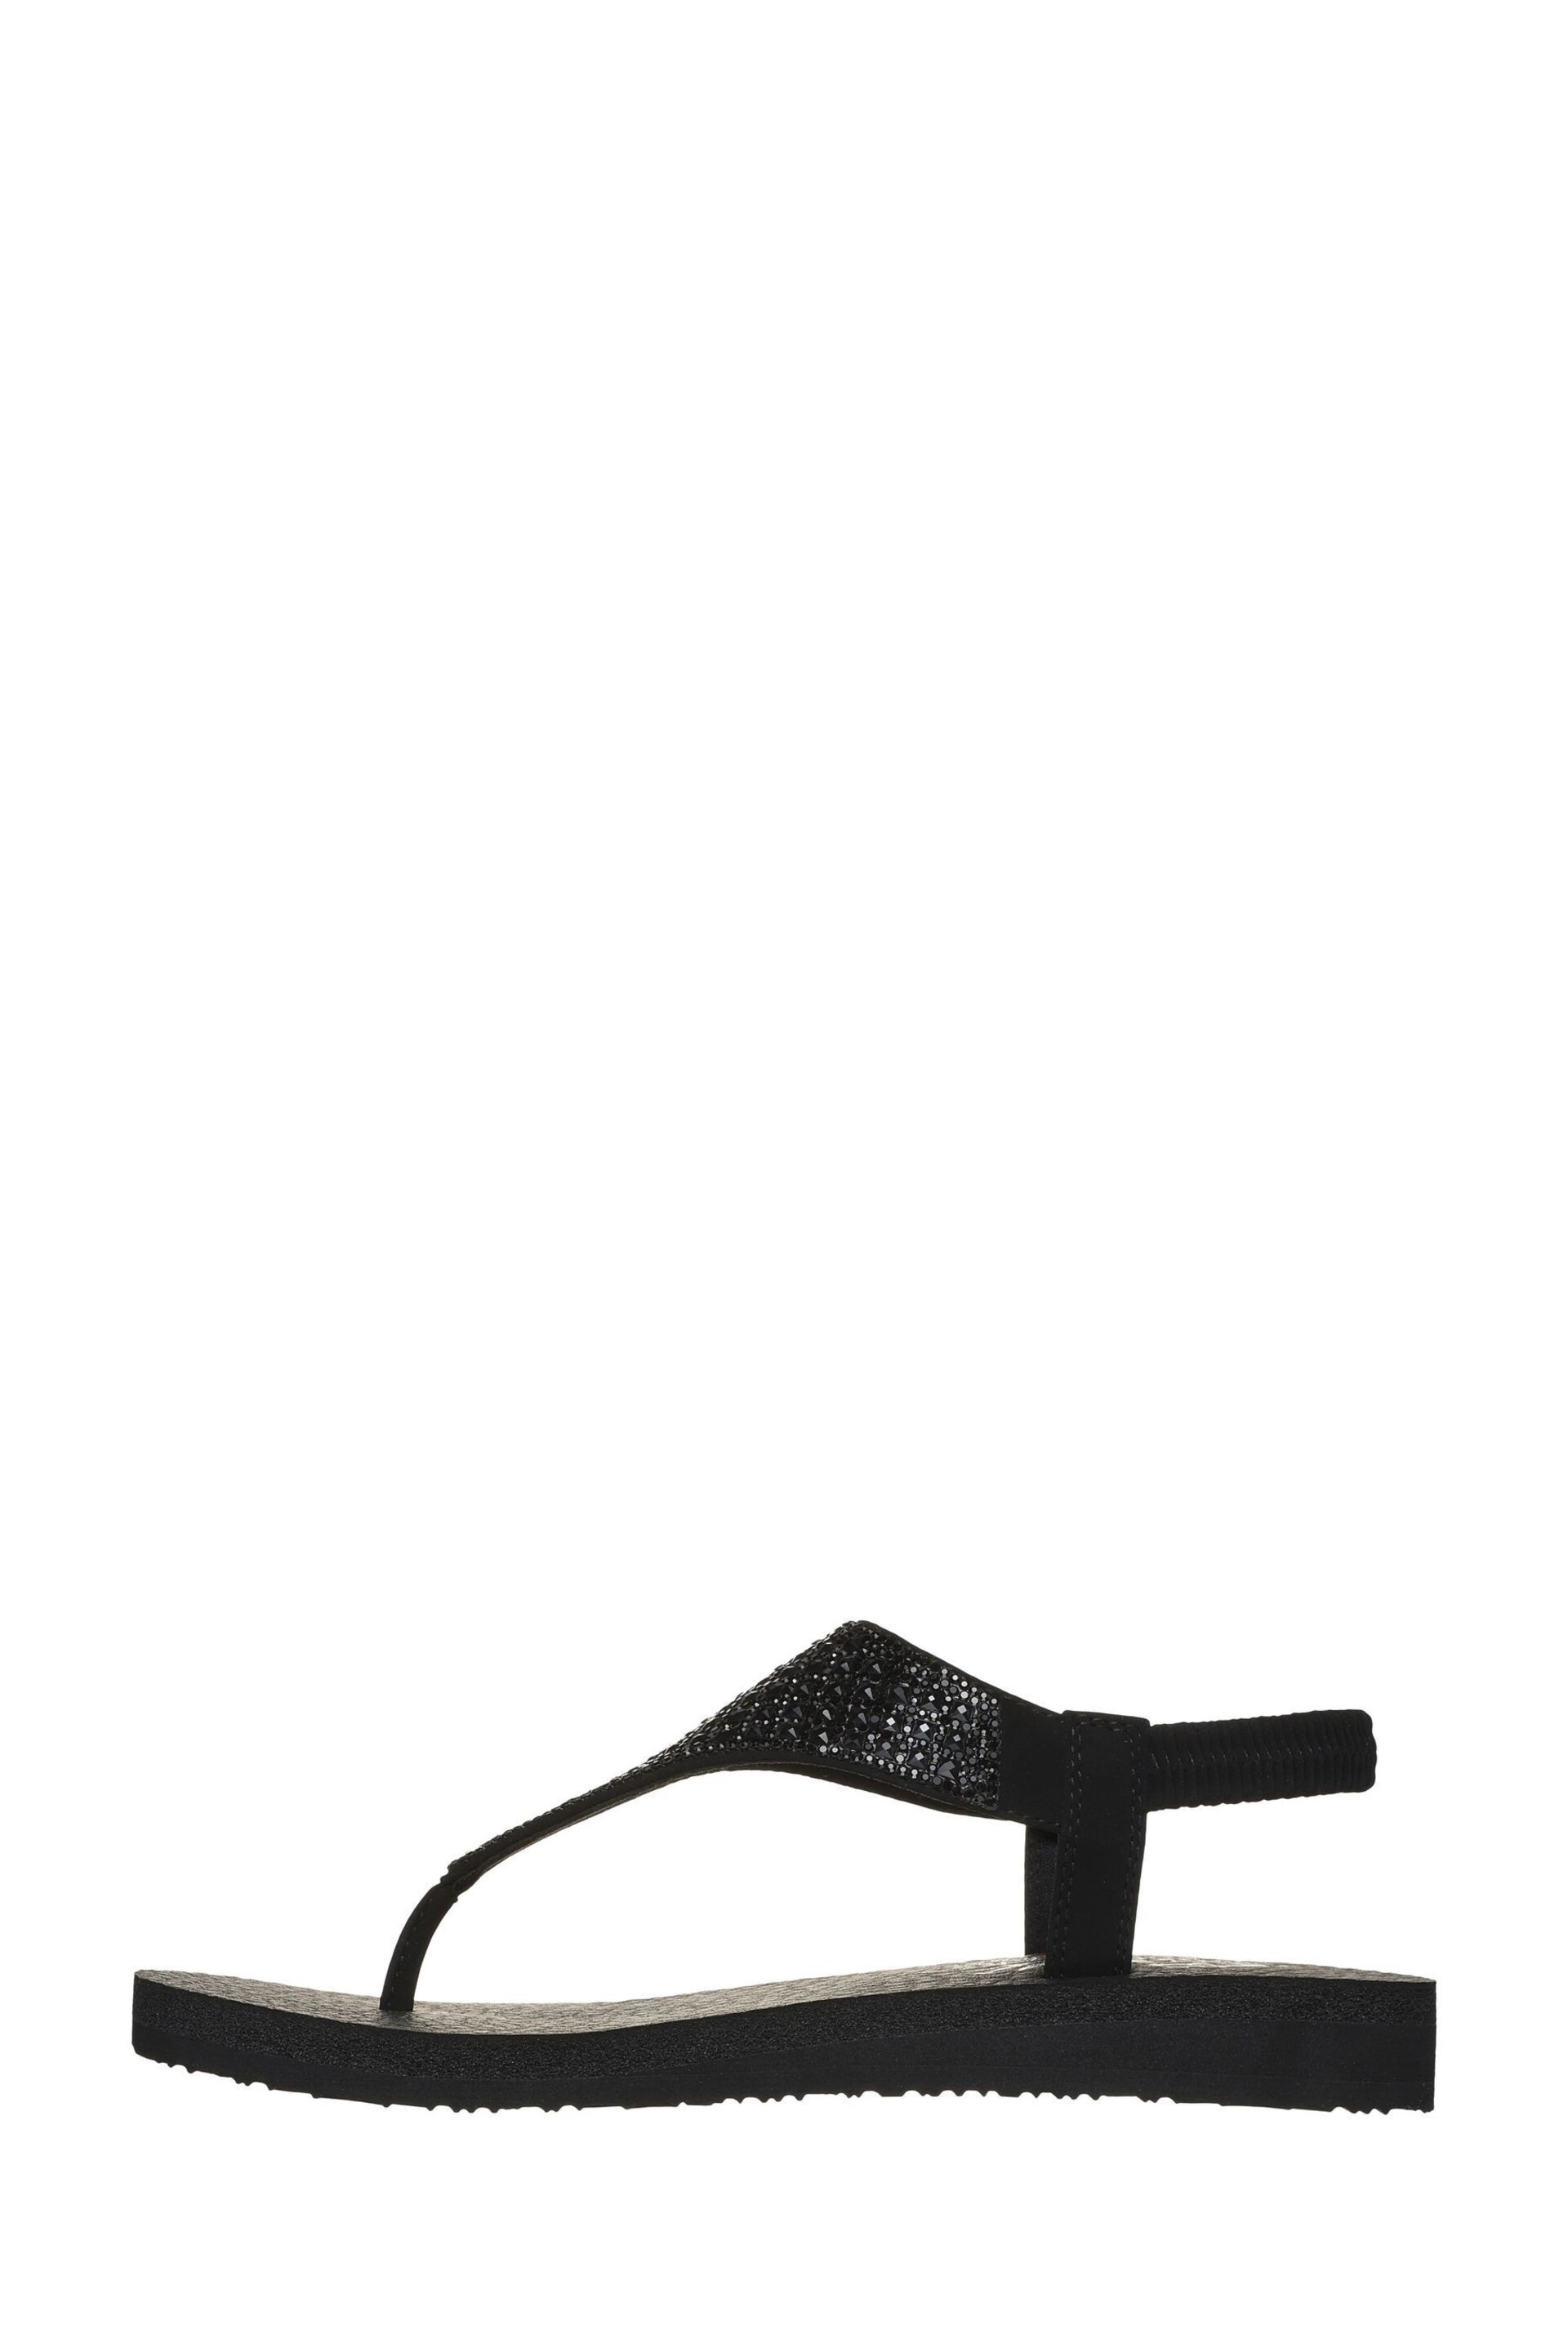 Skechers Black Meditation Rockstar Sandals - Image 3 of 5